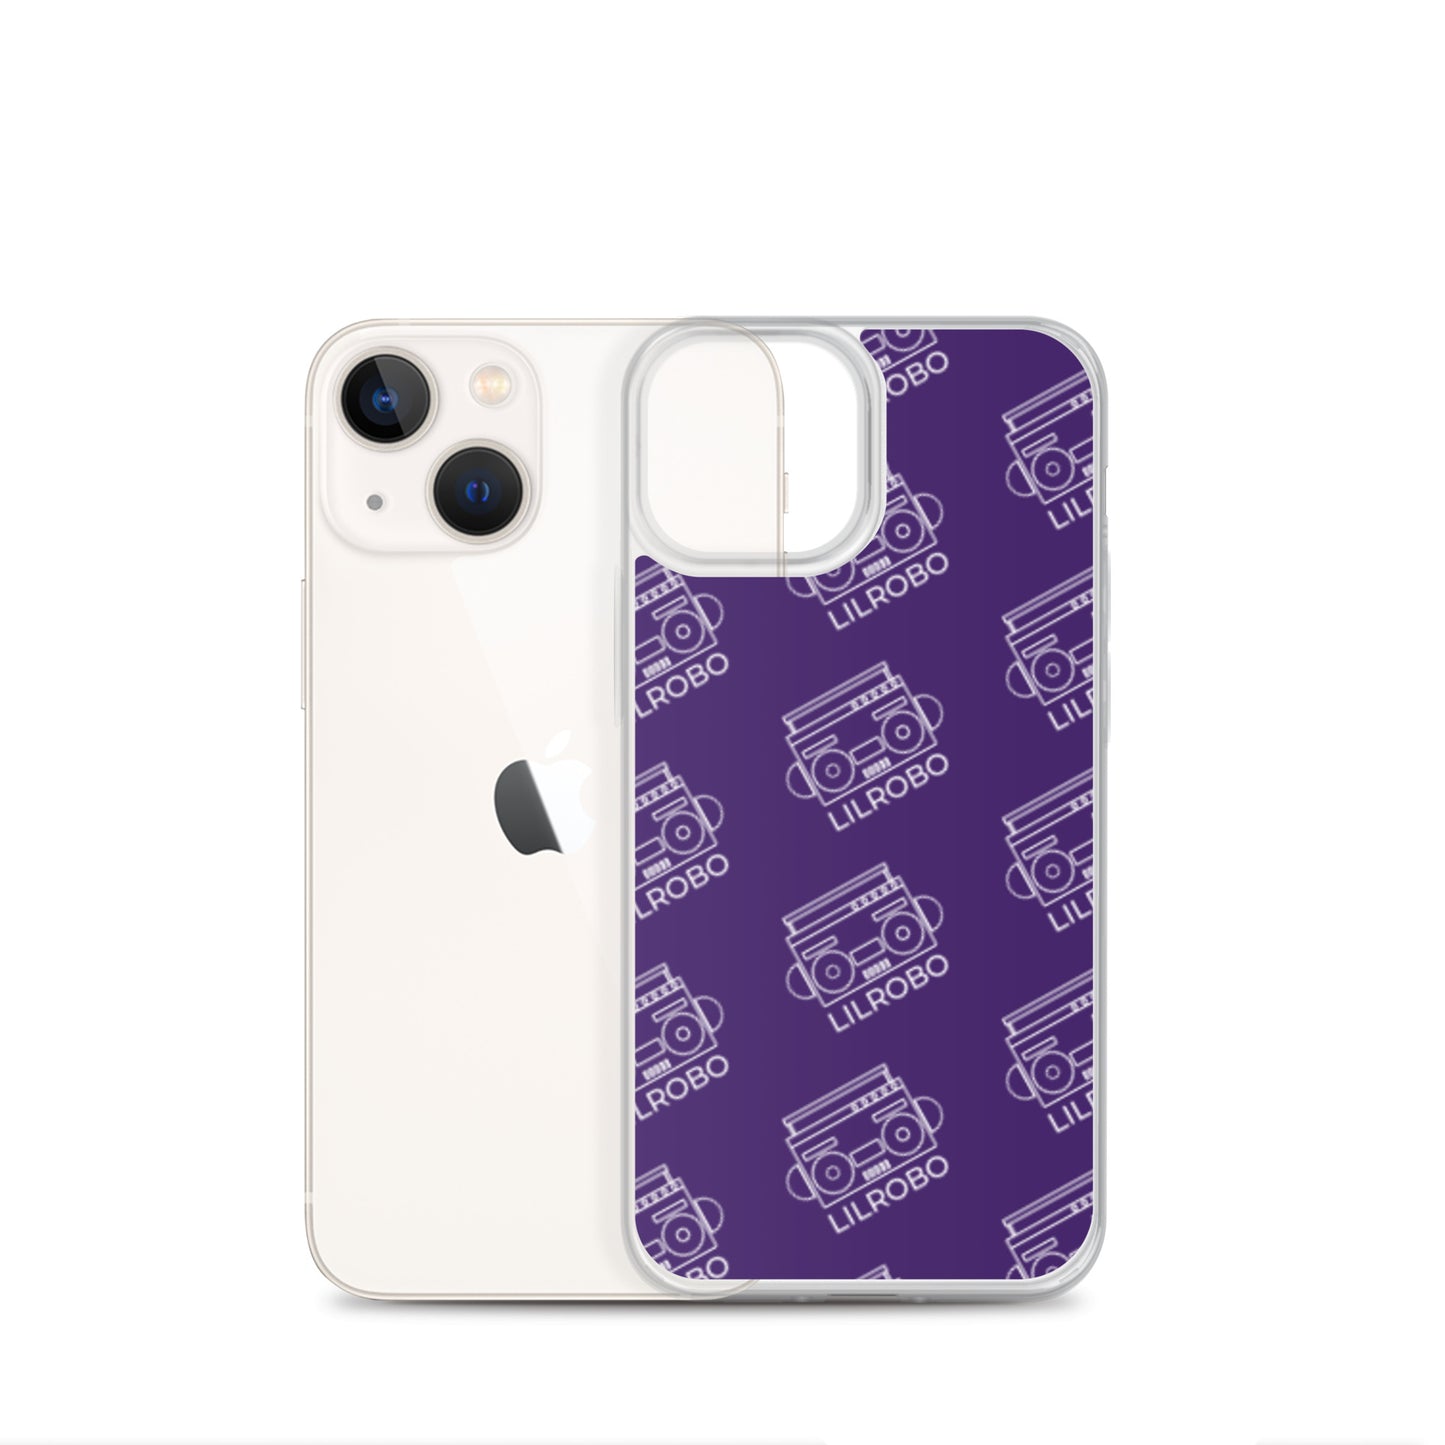 Lilrobo Logo iPhone Case (Purple)